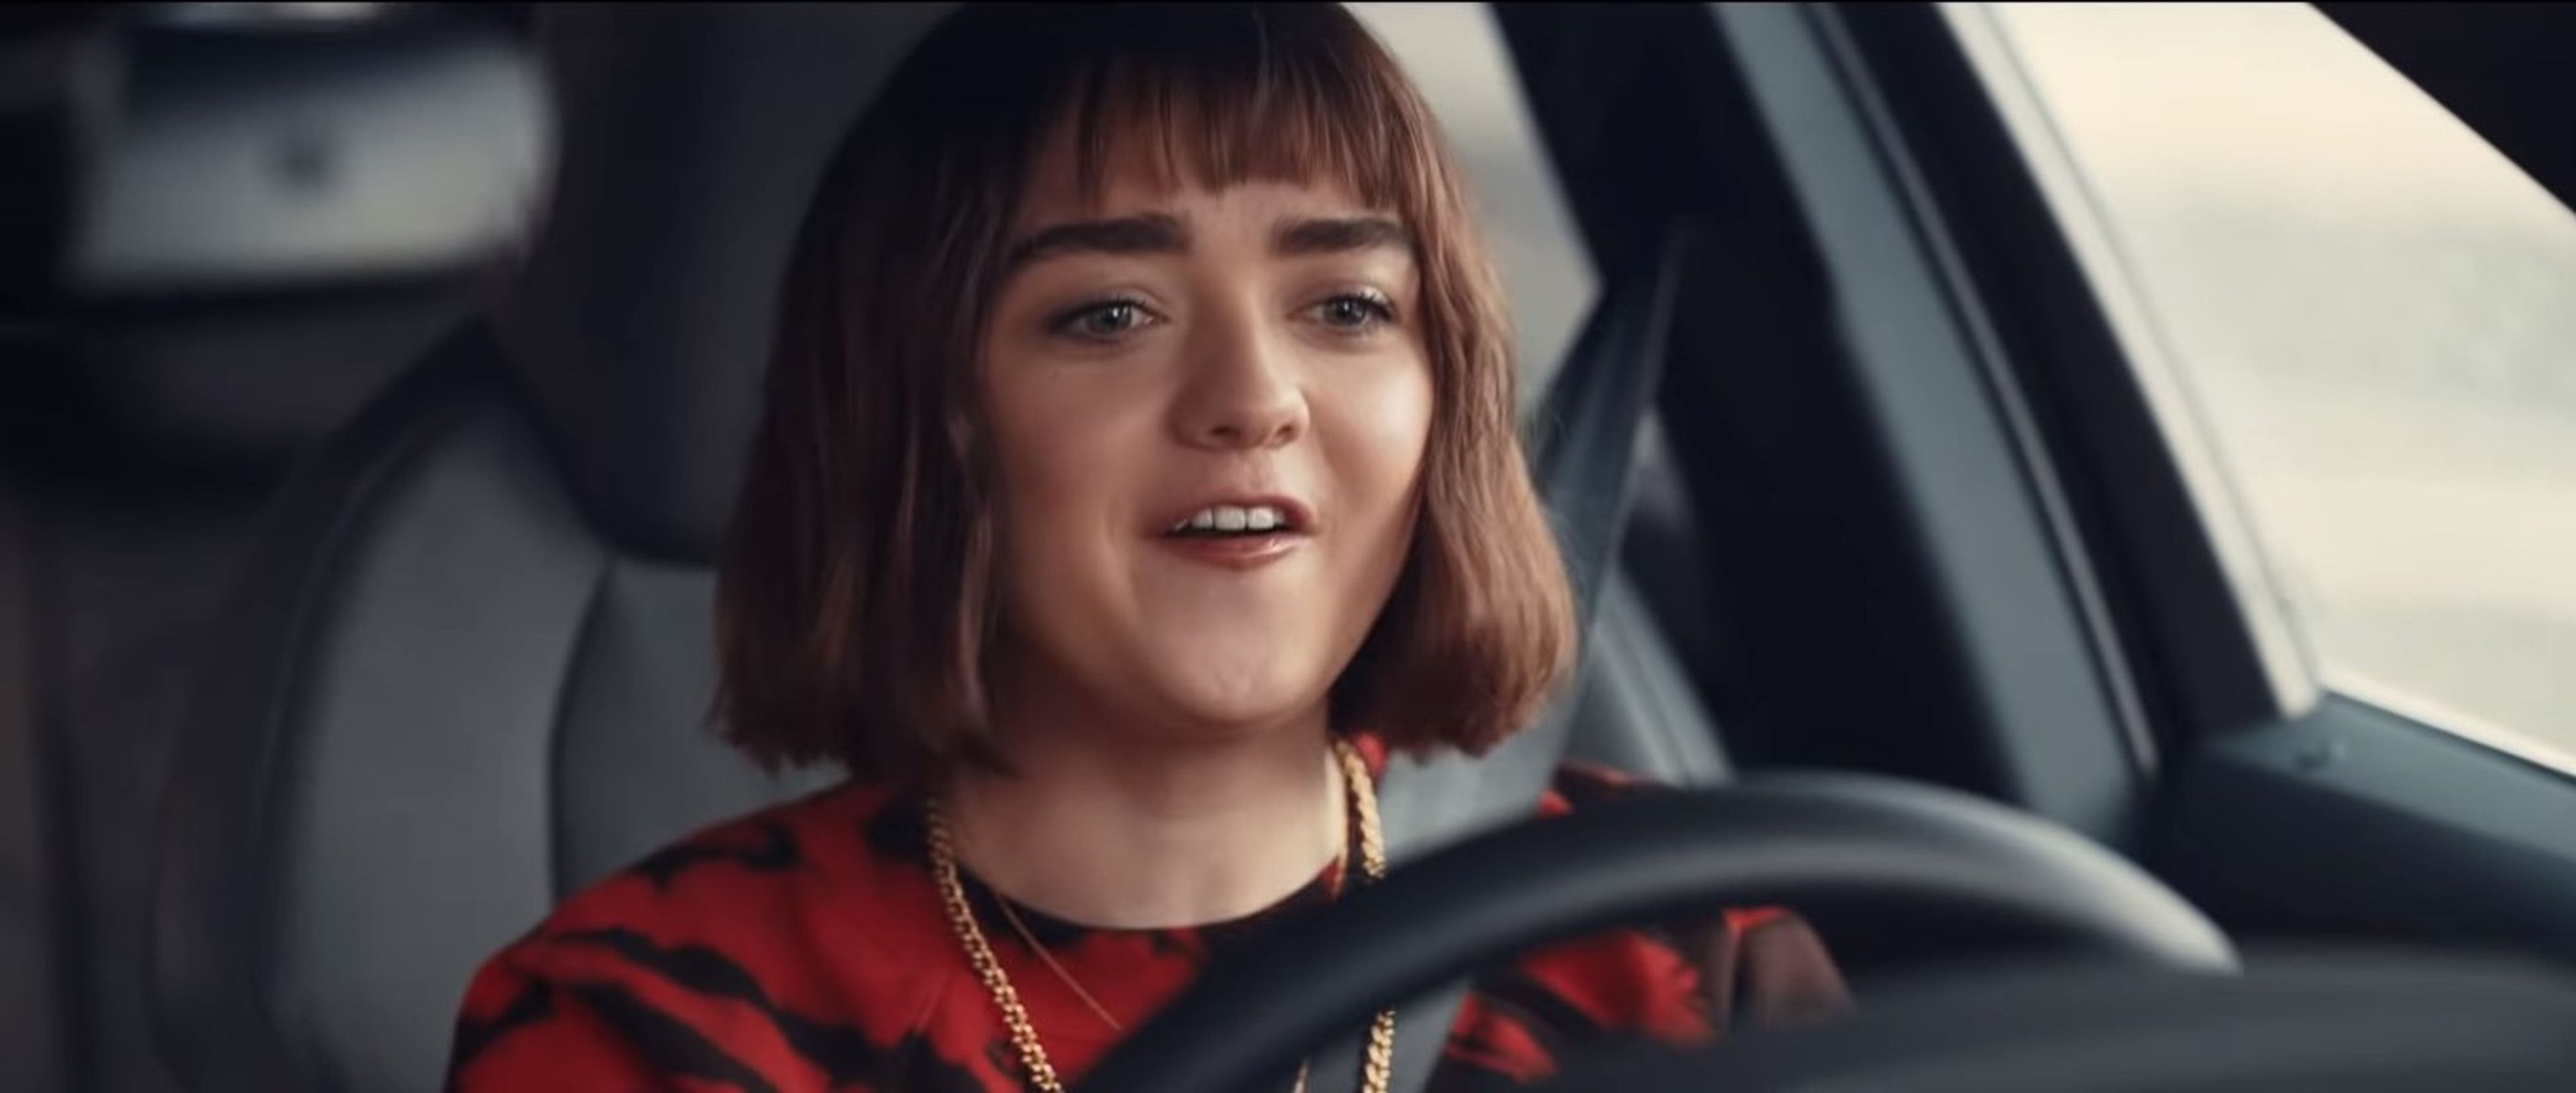 Arya Stark presenta el anuncio de Audi para la Super Bowl 2020